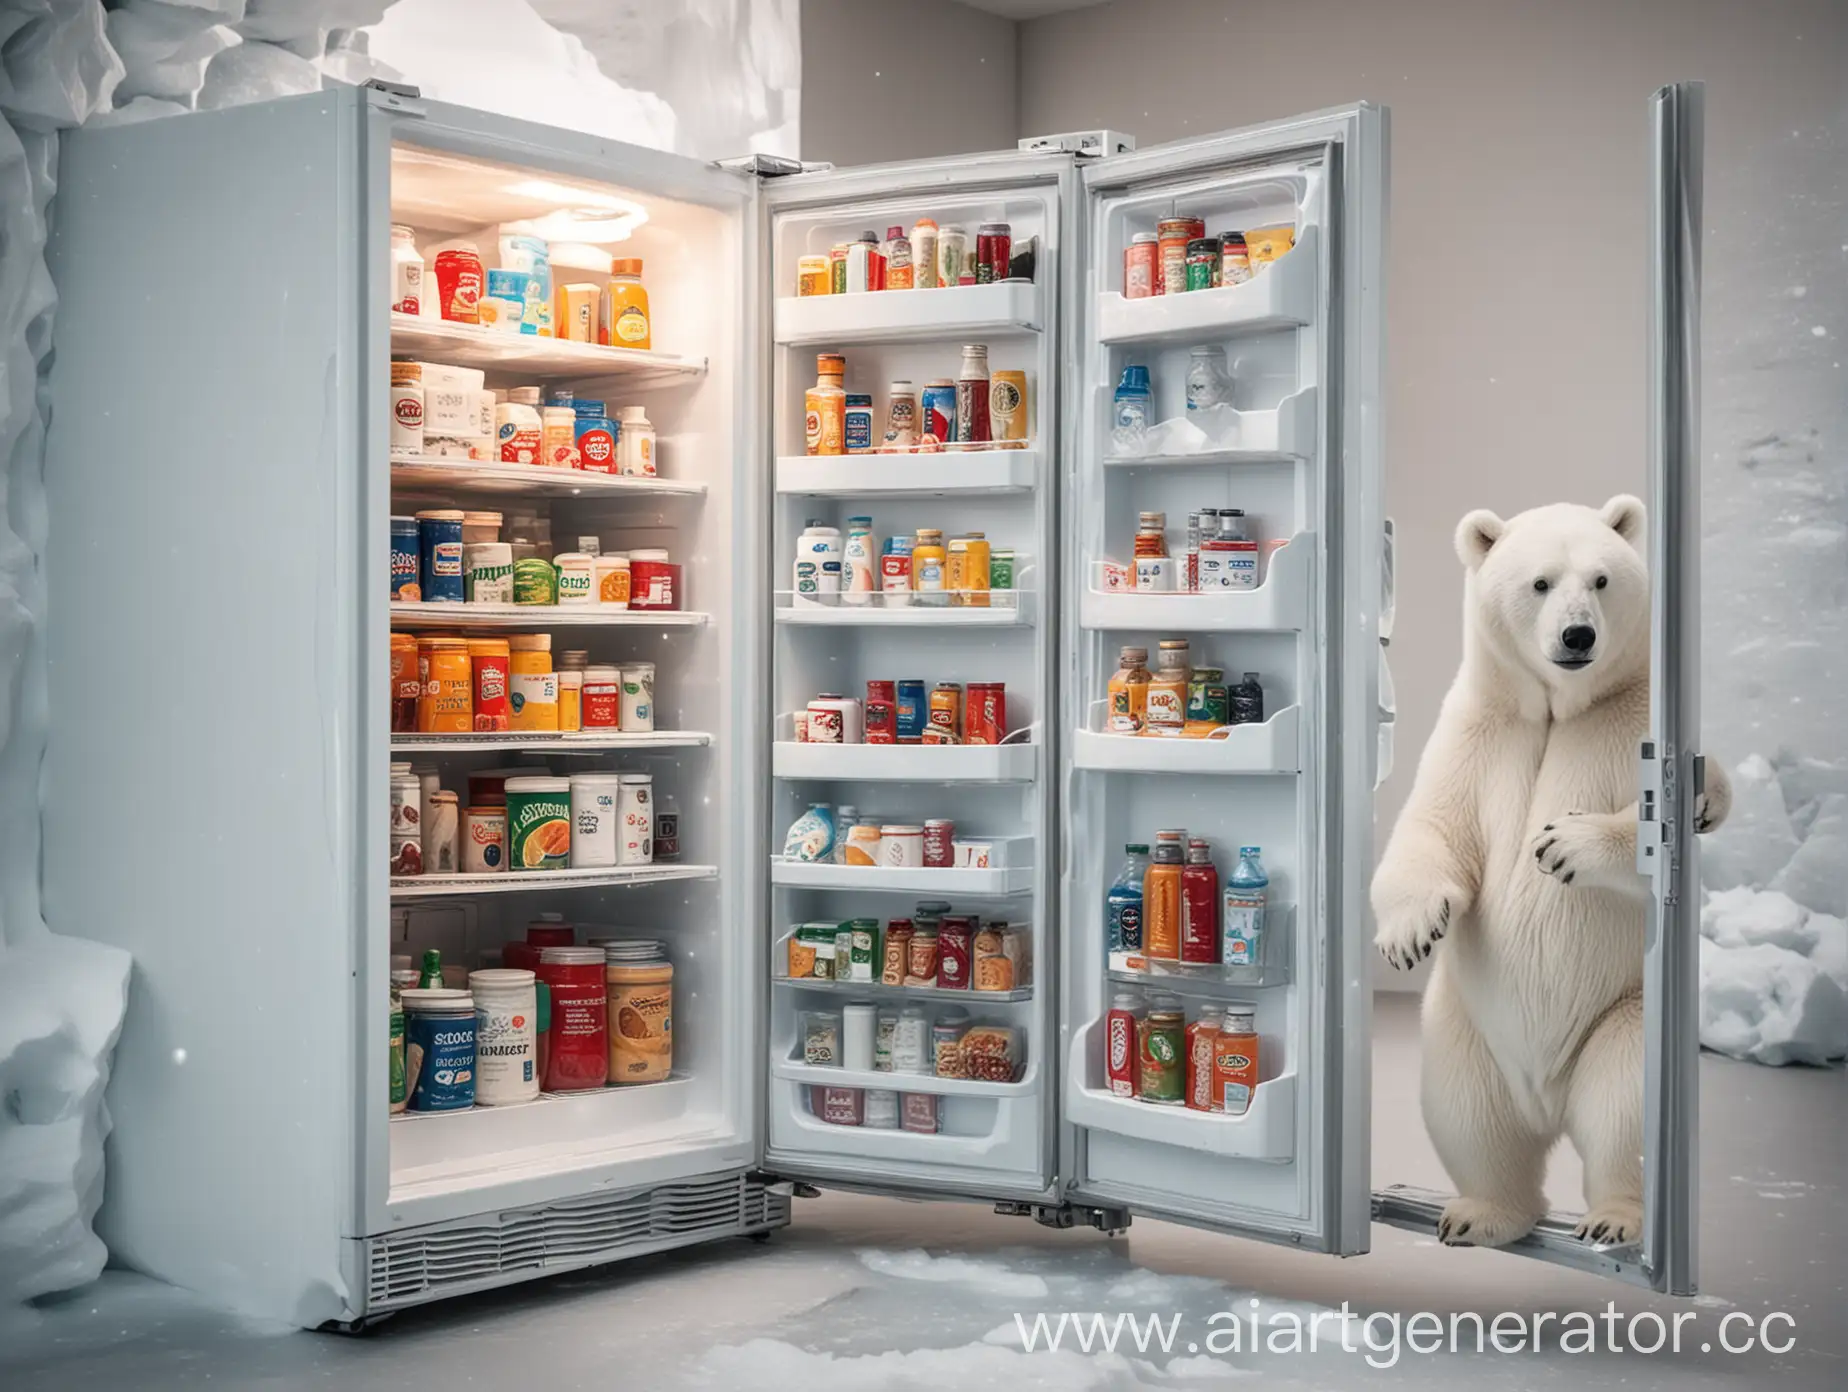 фото современного холодильника с продуктами внутри и открытой дверцей среди льдов северного полюса, рядом стоит белый медведь